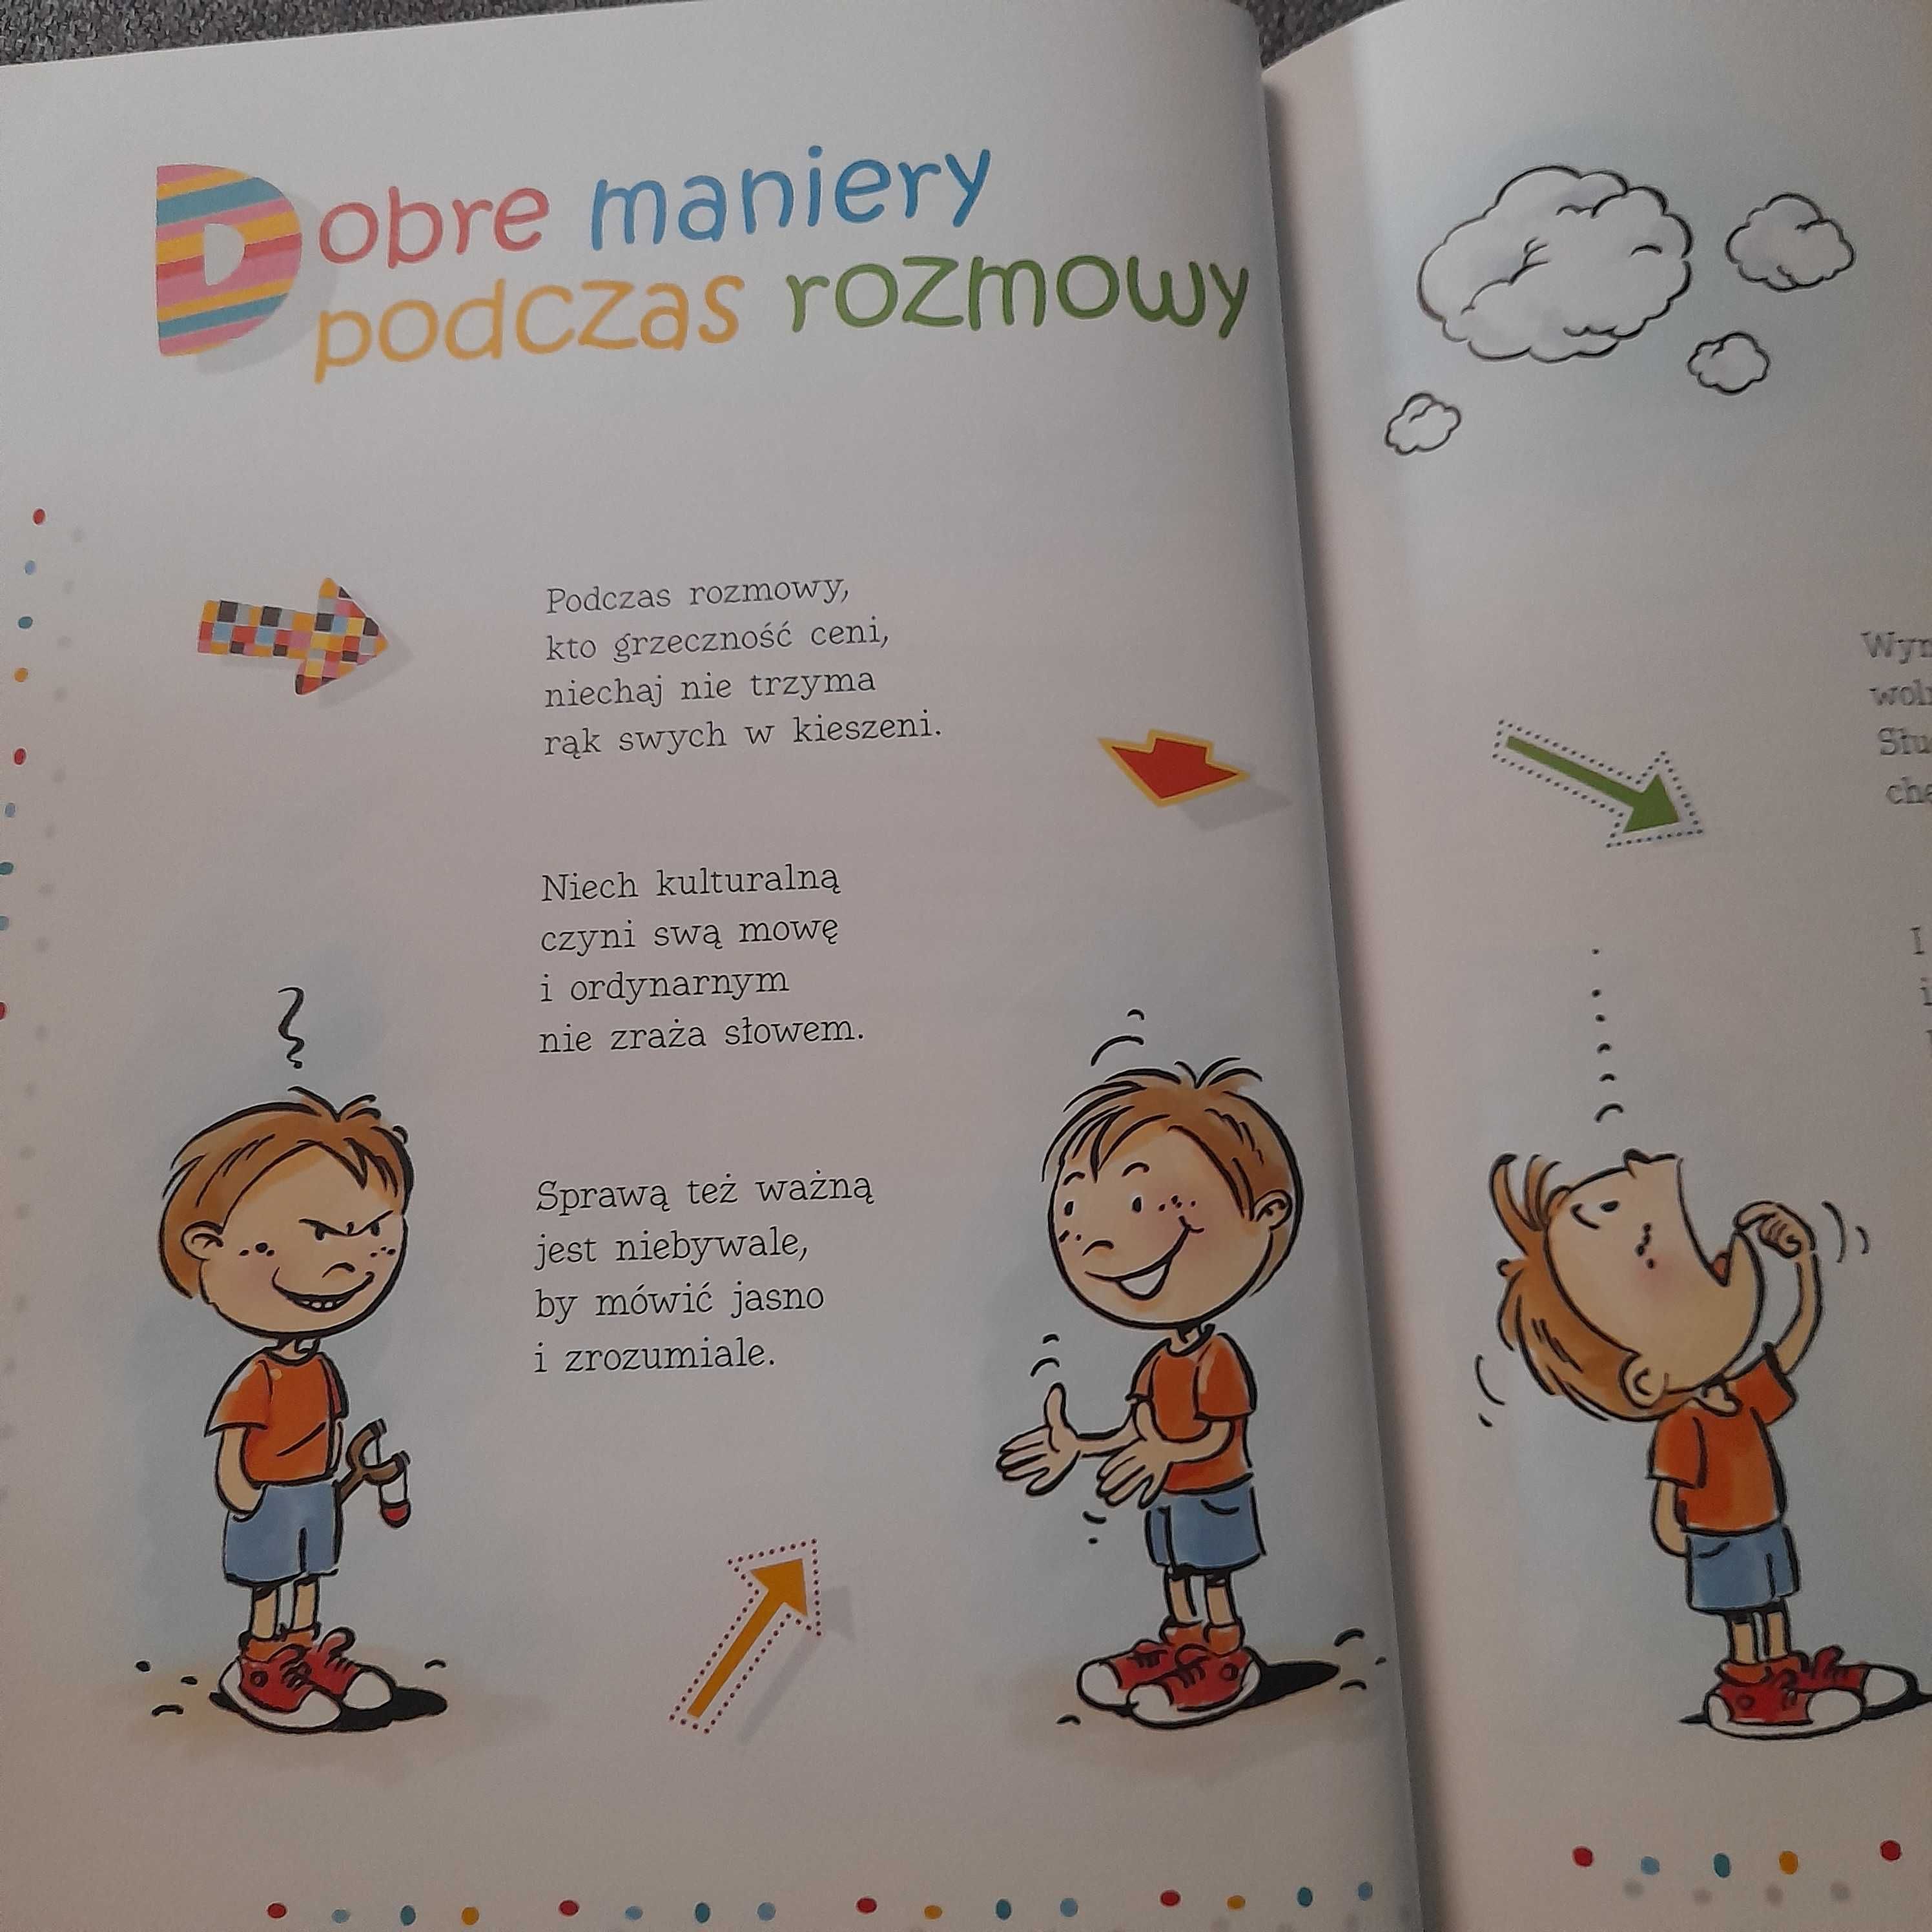 Książka Dobre Maniery dla dzieci i nie tylko.